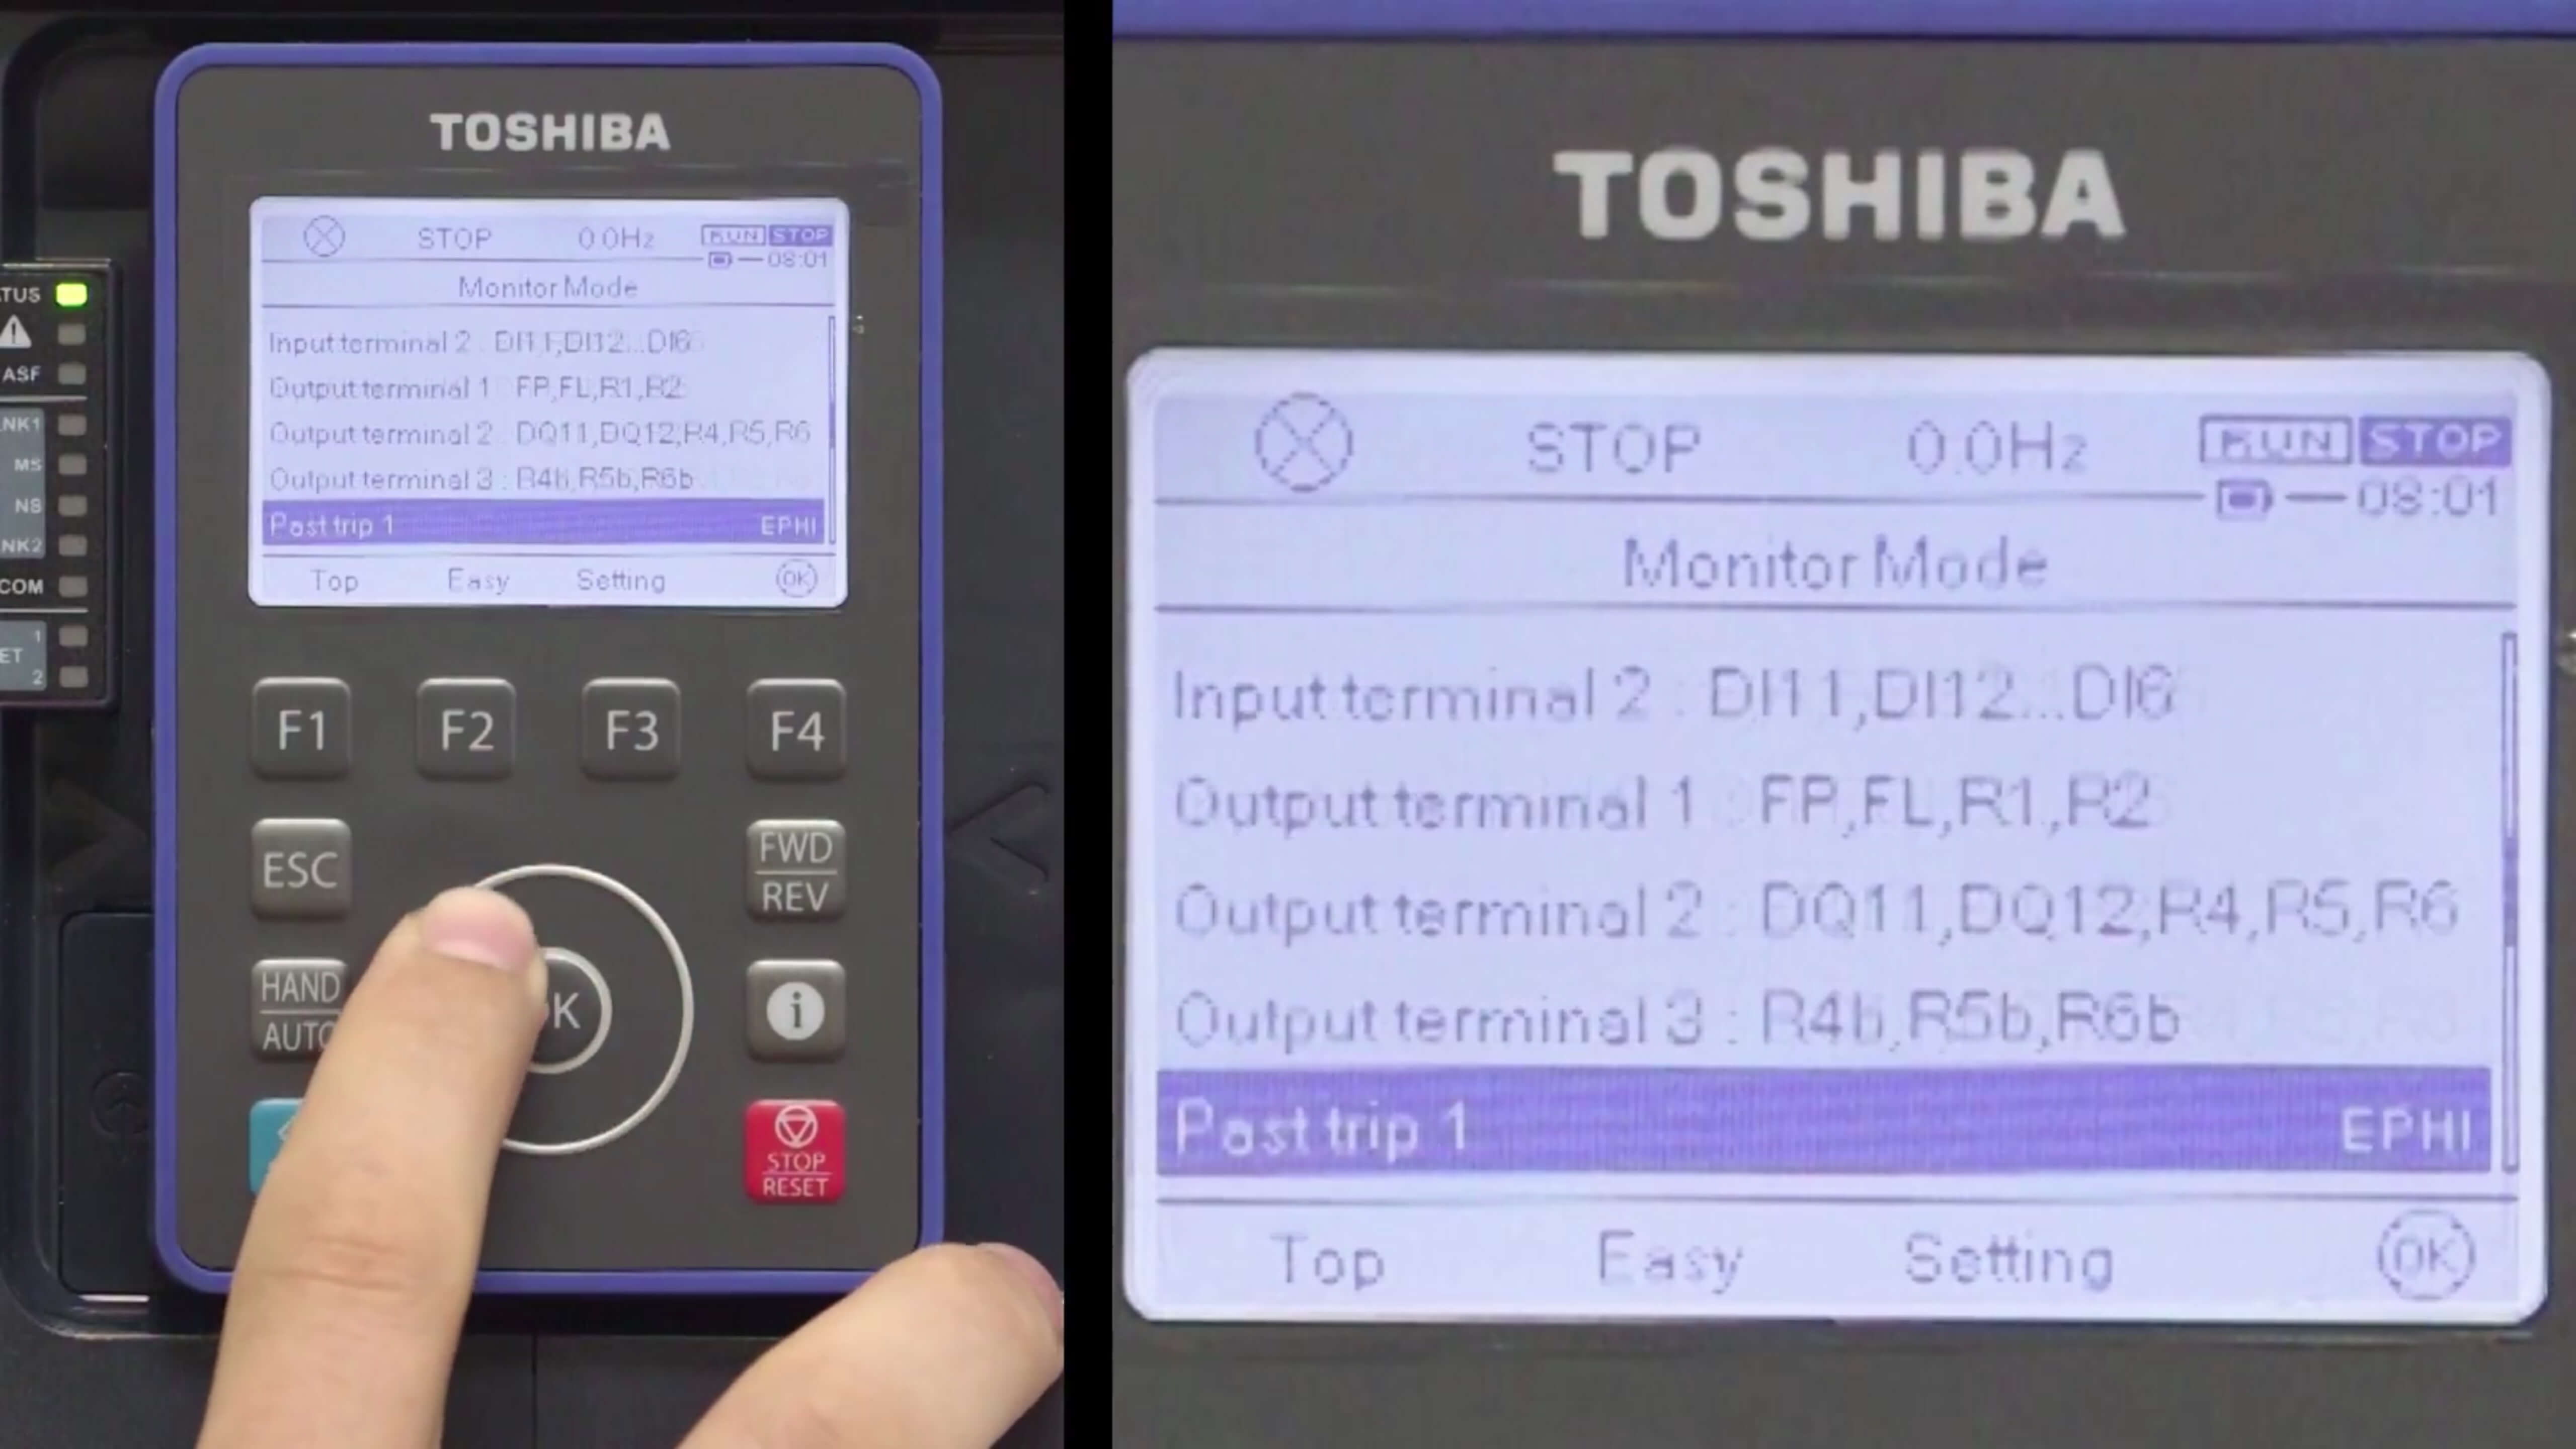 Toshiba AS3 ASD Video_Tutorials